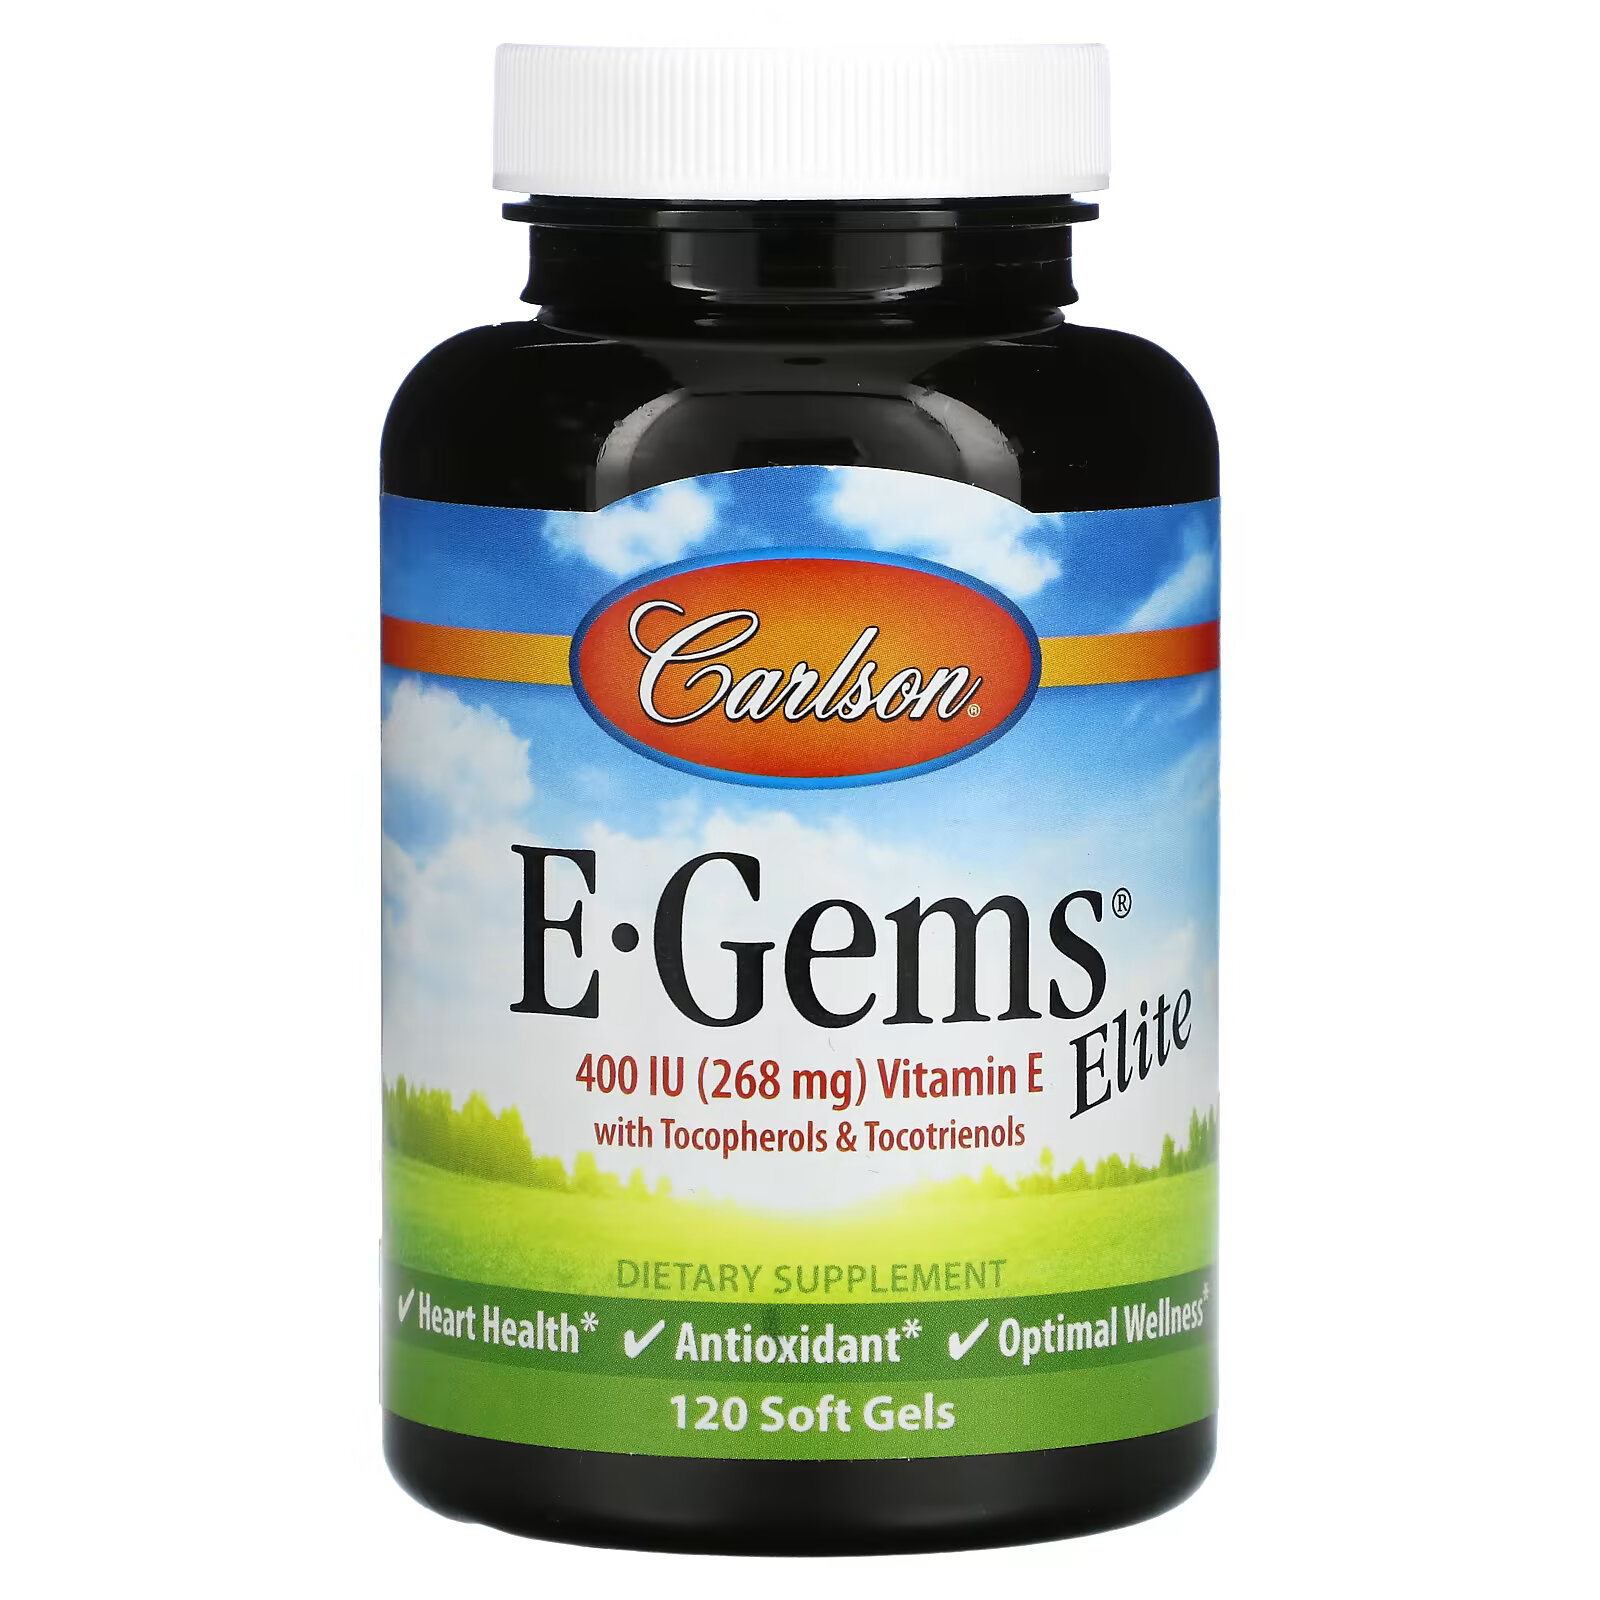 Carlson, E-Gems Elite, витамин E, 268 мг (400 МЕ), 120 мягких таблеток carlson e gems 67 мг 100 ме 100 мягких таблеток